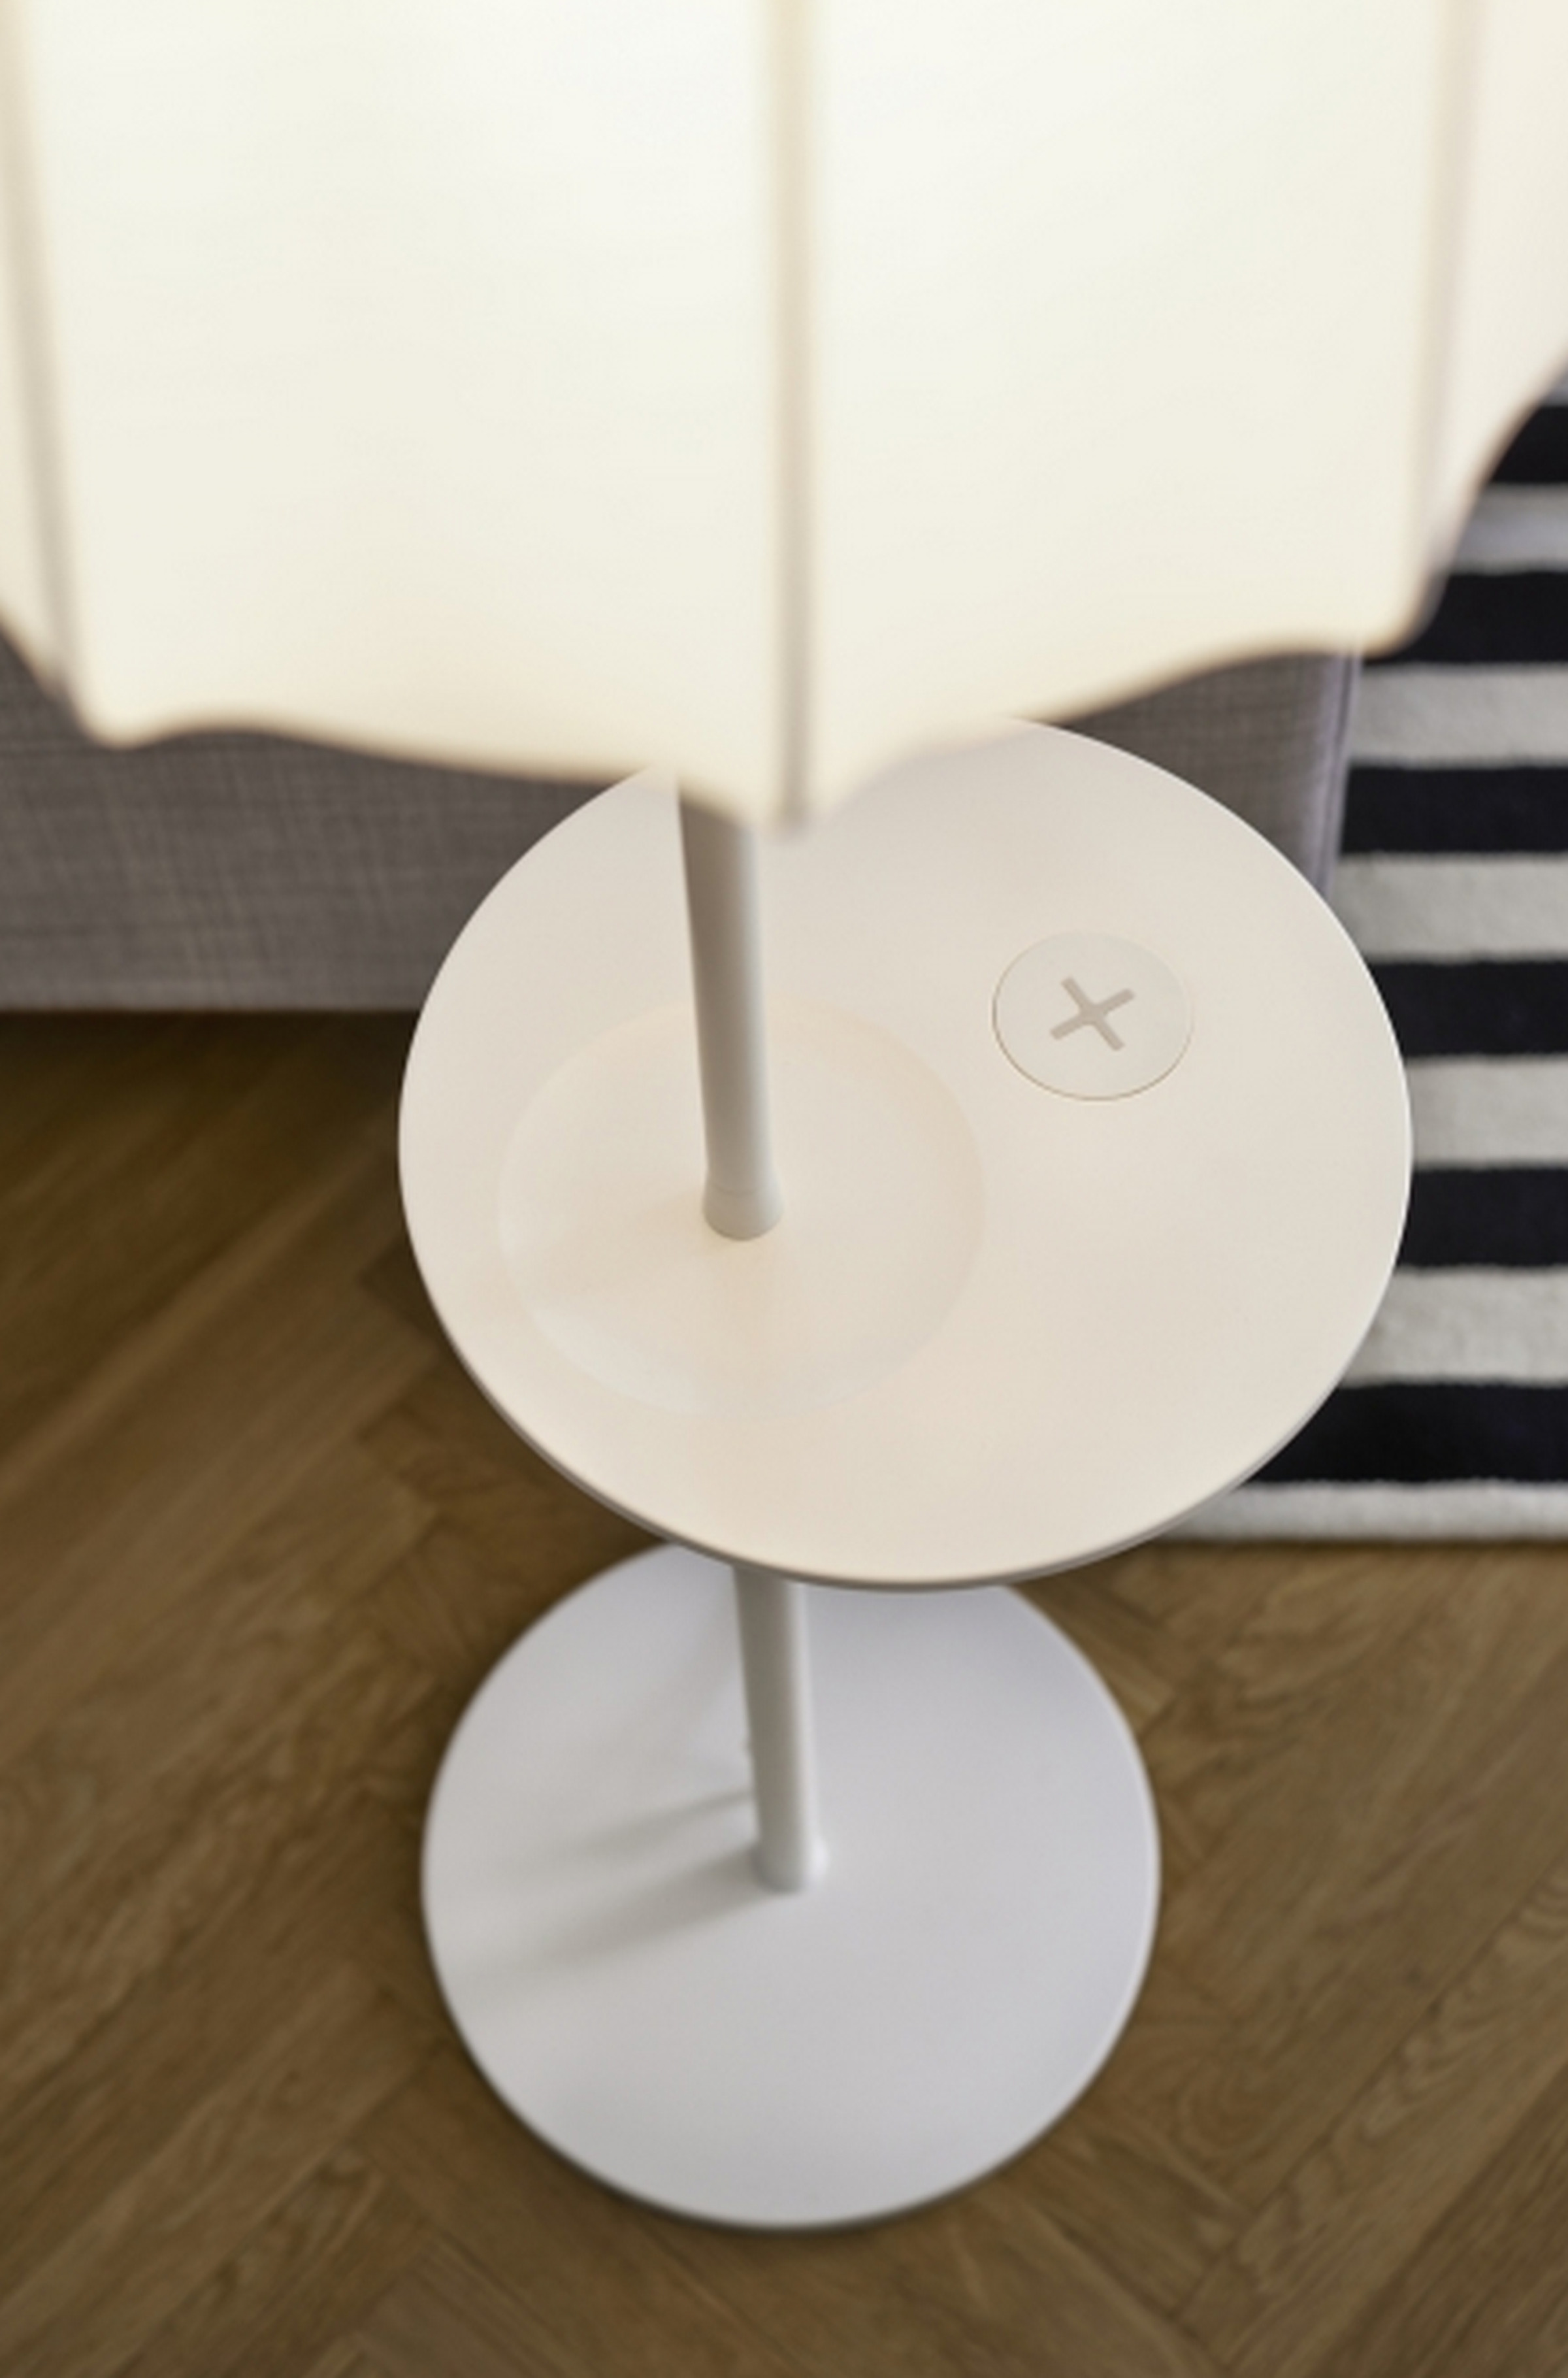 Ikea Qi wireless charging furniture